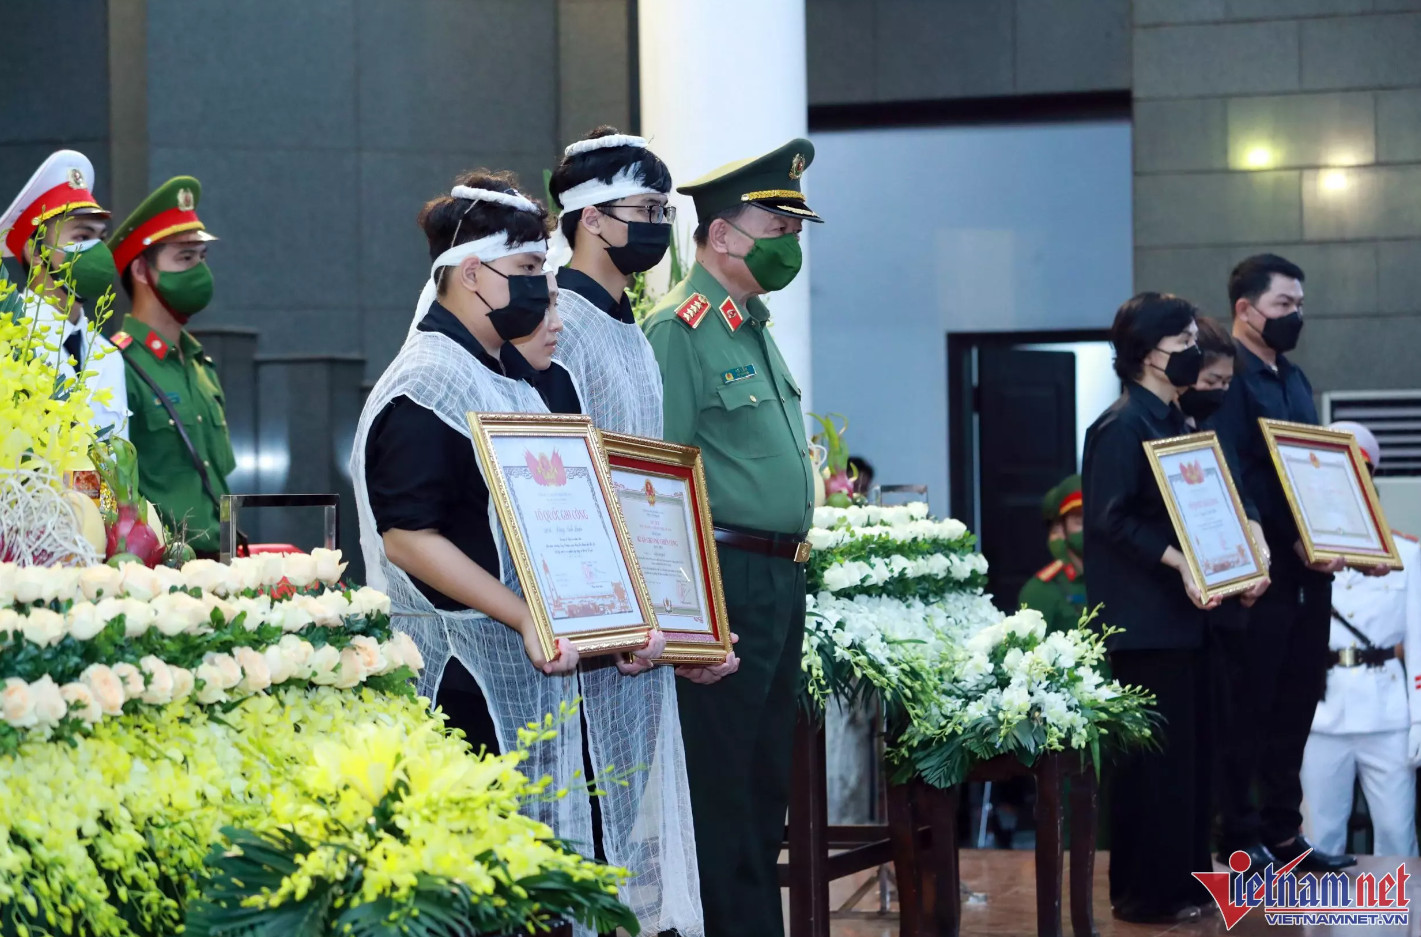 Chủ tịch UBND TP Hà Nội Trần Sỹ Thanh tặng bằng khen cho 3 chiến sĩ. Thay mặt UBND TP, Phó Chủ tịch TP Hà Minh Hải trao bằng khen cho đại diện 3 gia đình.